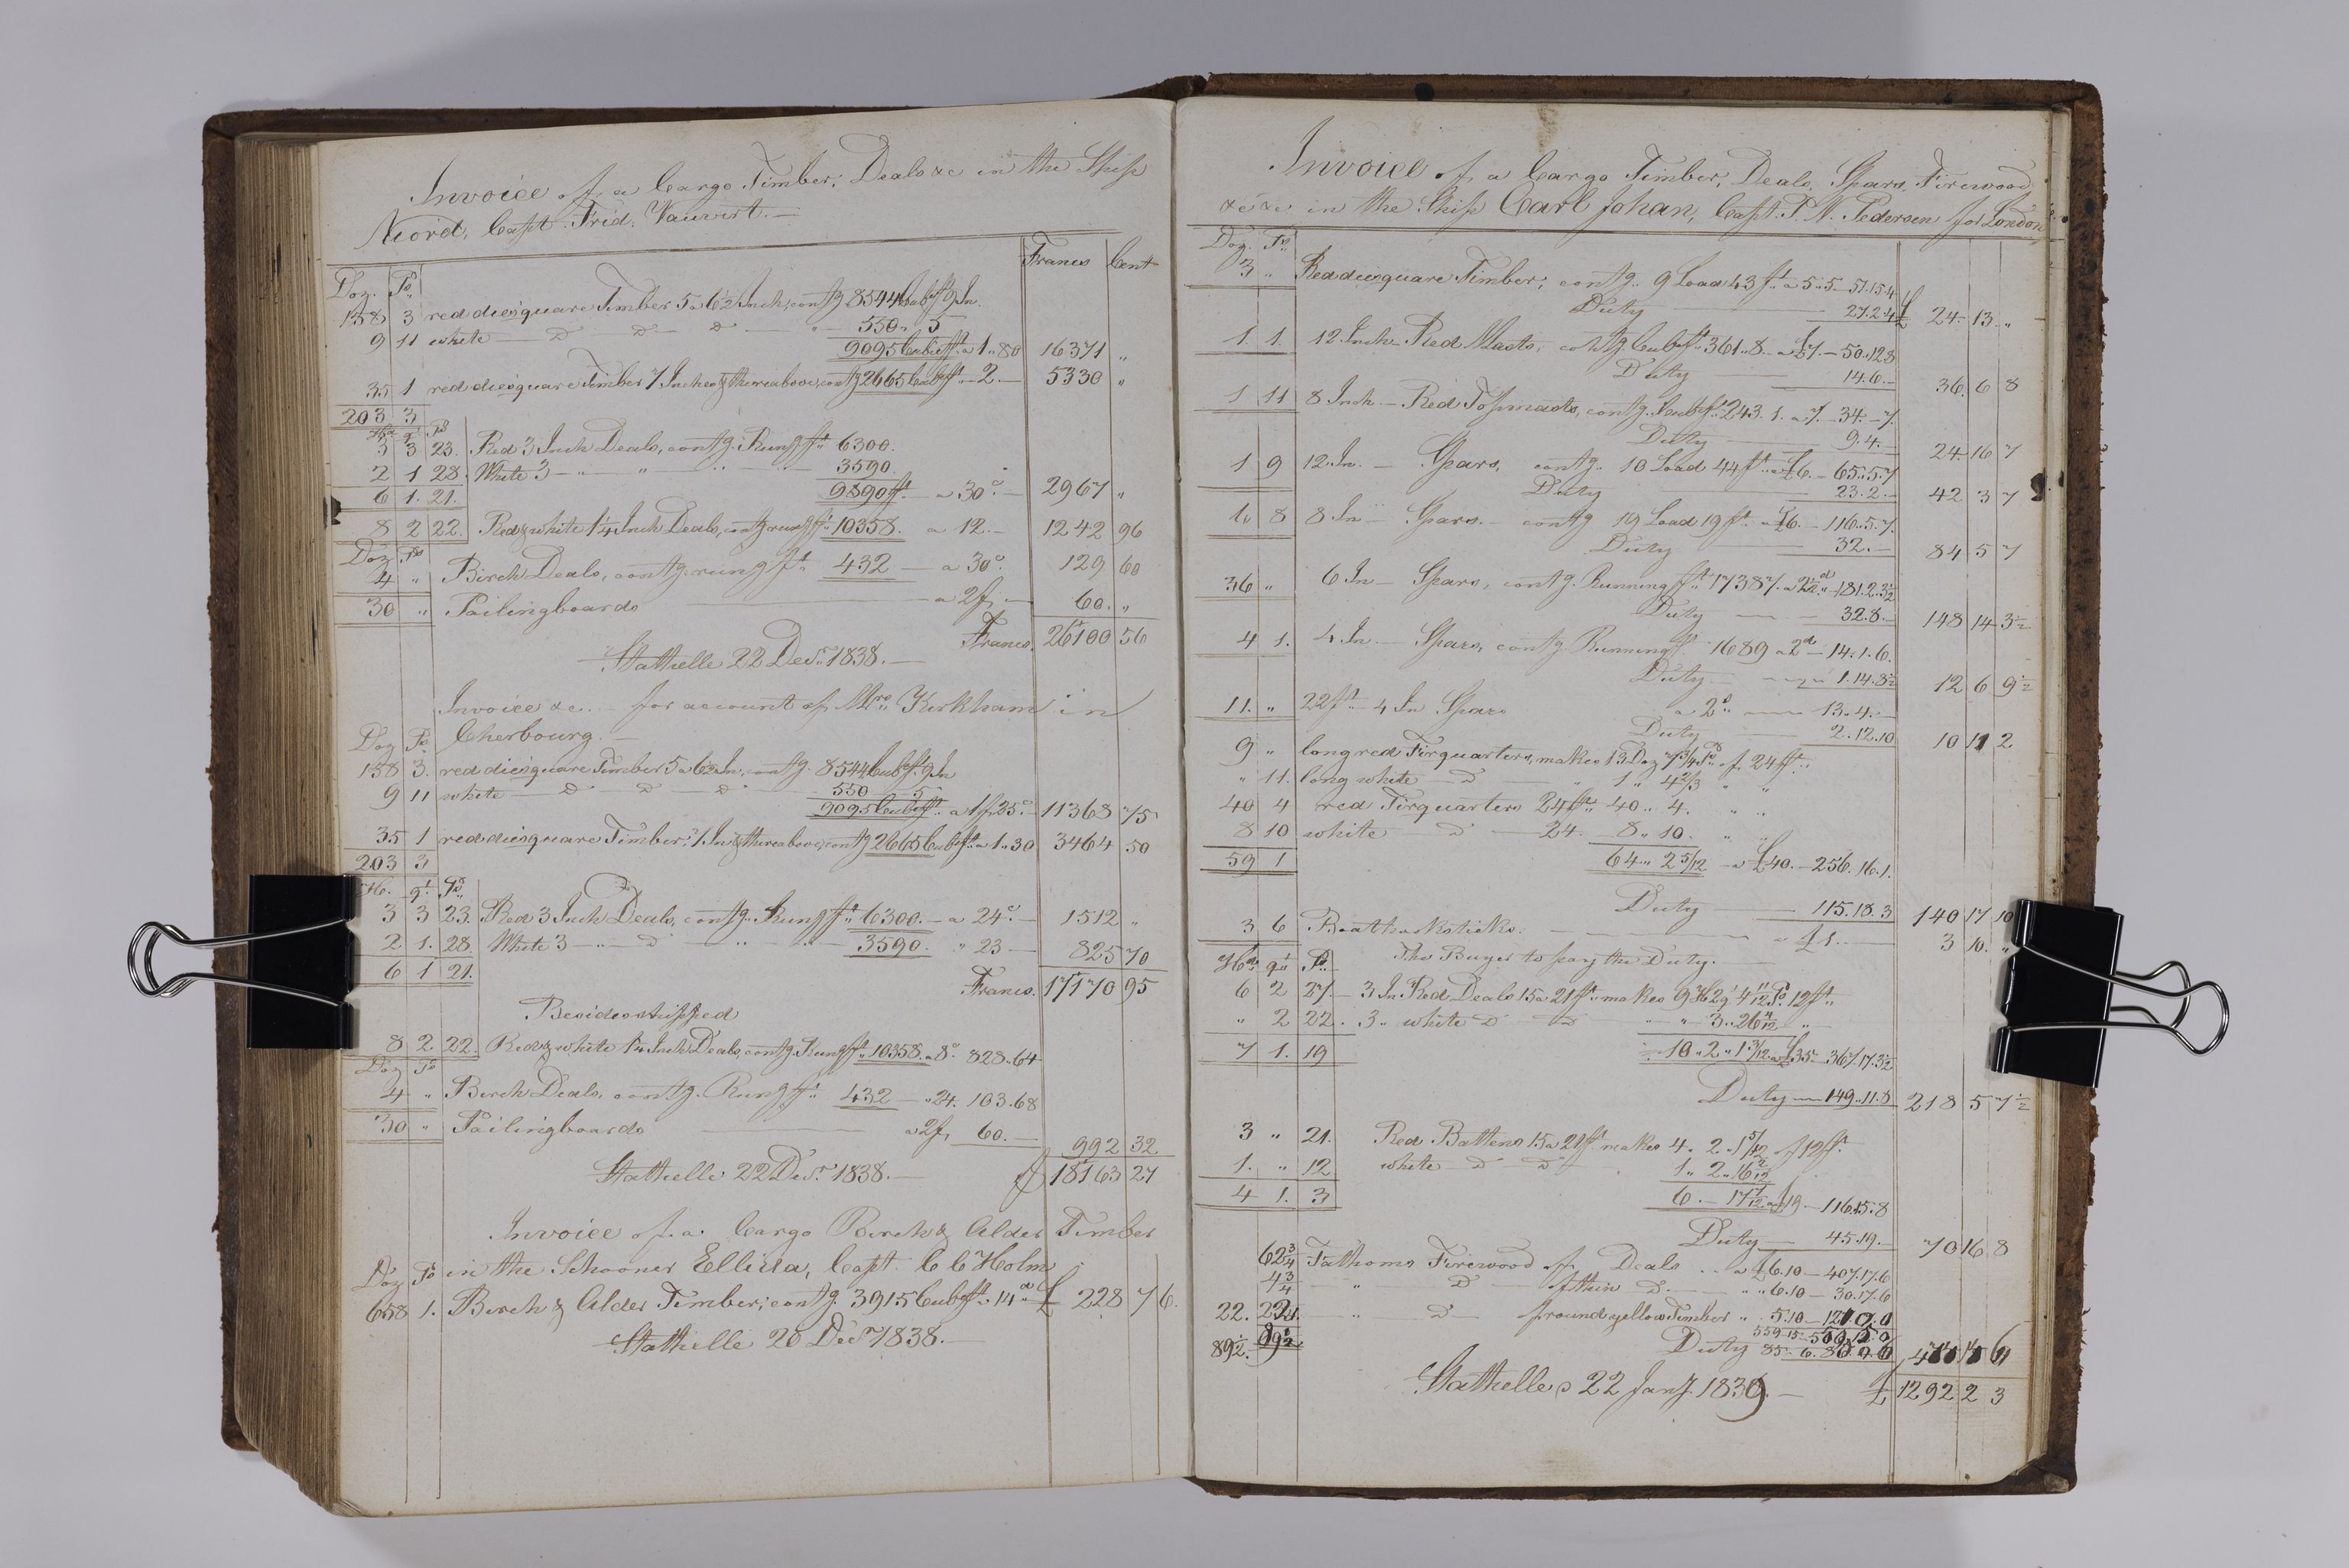 , Priscourant-tømmerpriser, 1834-38, 1834-1838, s. 365